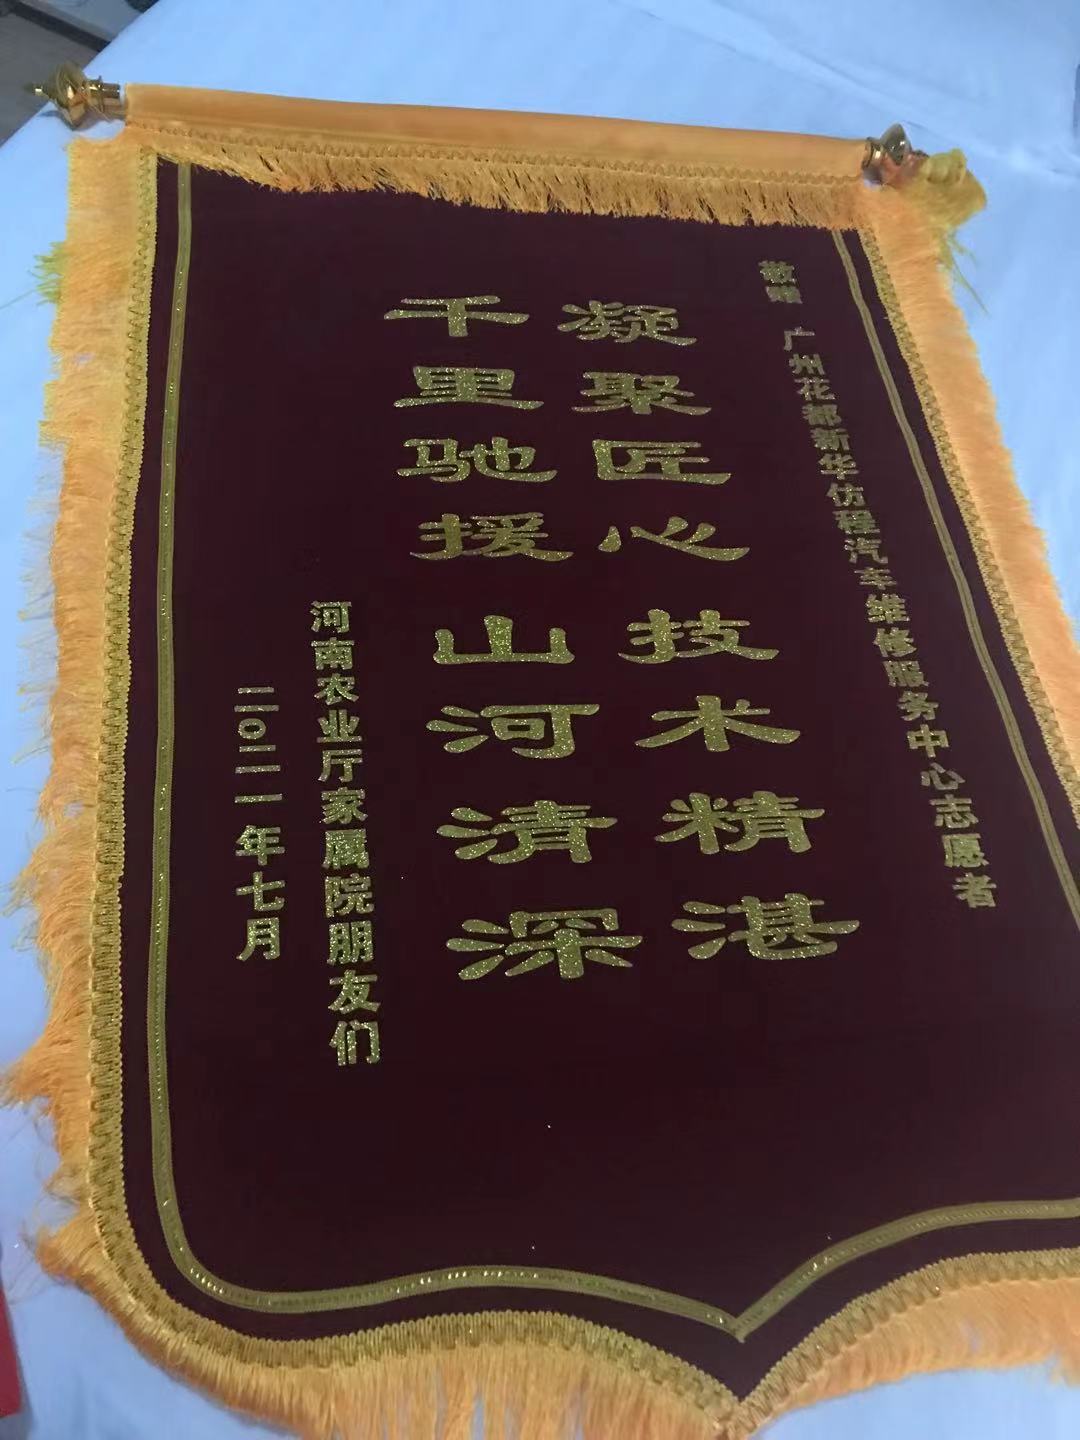 河南农业厅家属院的朋友们为叶师傅送的锦旗  来源：受访者提供